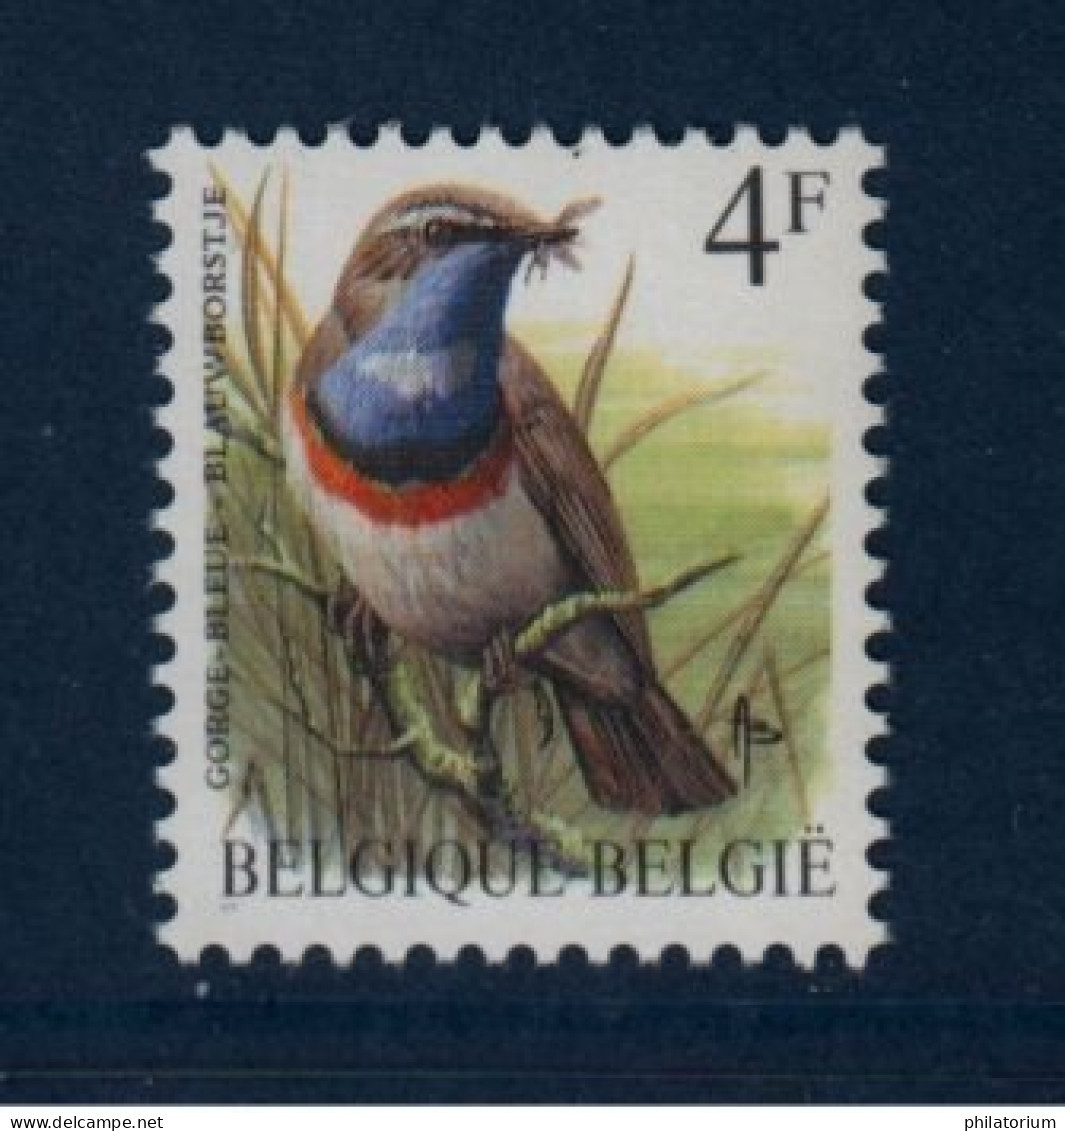 Belgique België, **, Yv 2321, Mi 2373x, SG 2848, Gorgebleue à Miroir, - 1985-.. Oiseaux (Buzin)